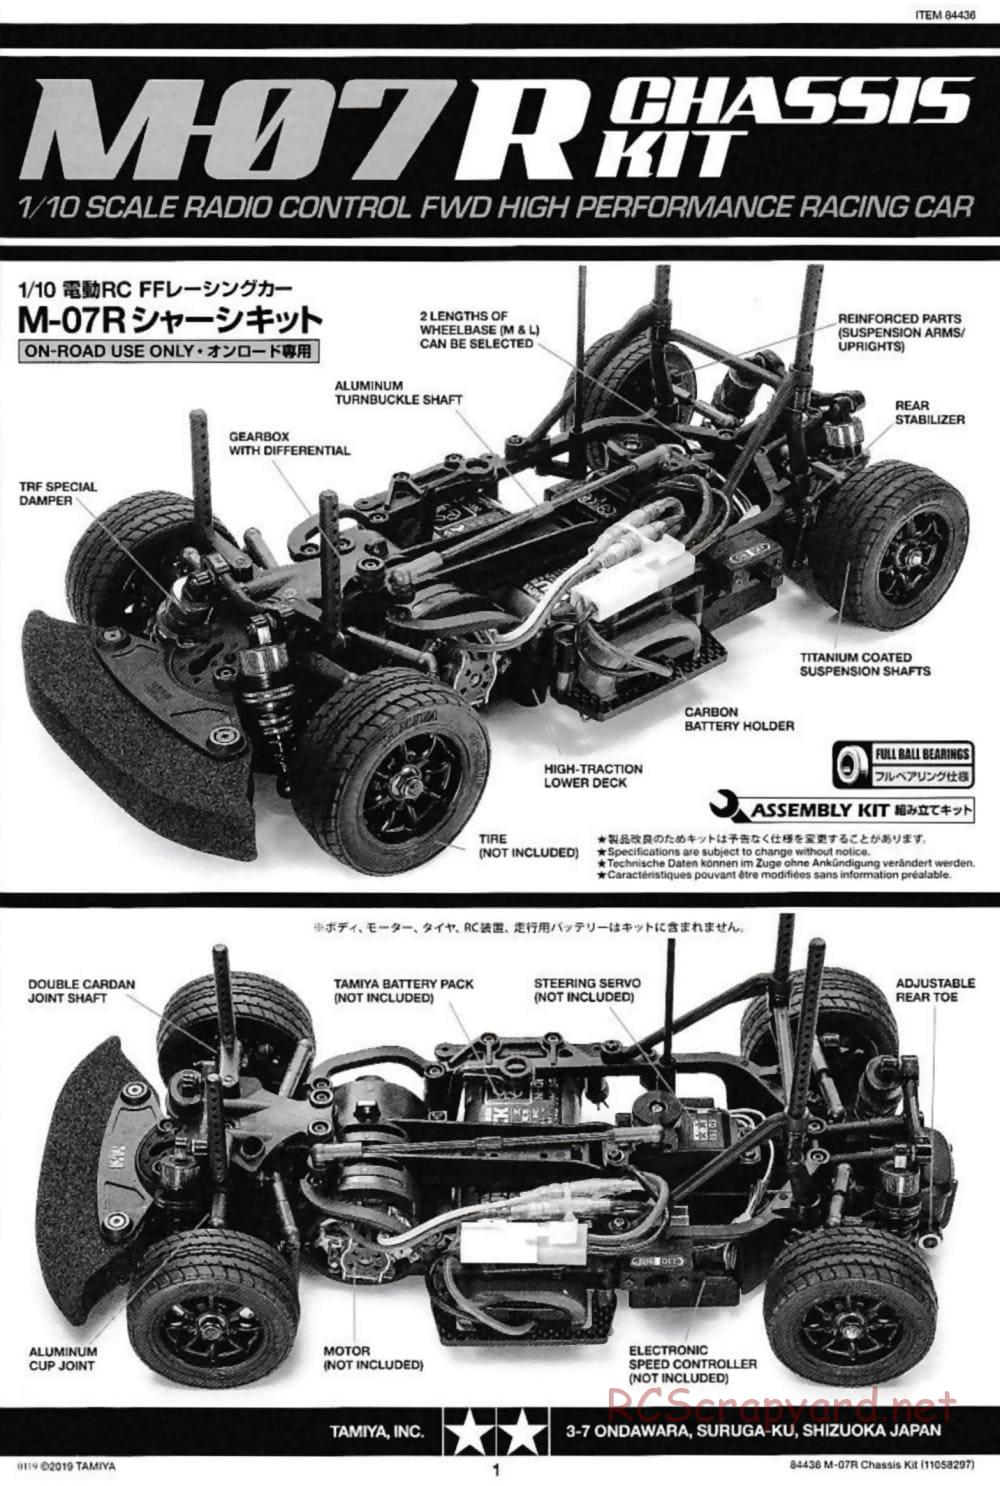 Tamiya - M-07R Chassis - Manual - Page 1